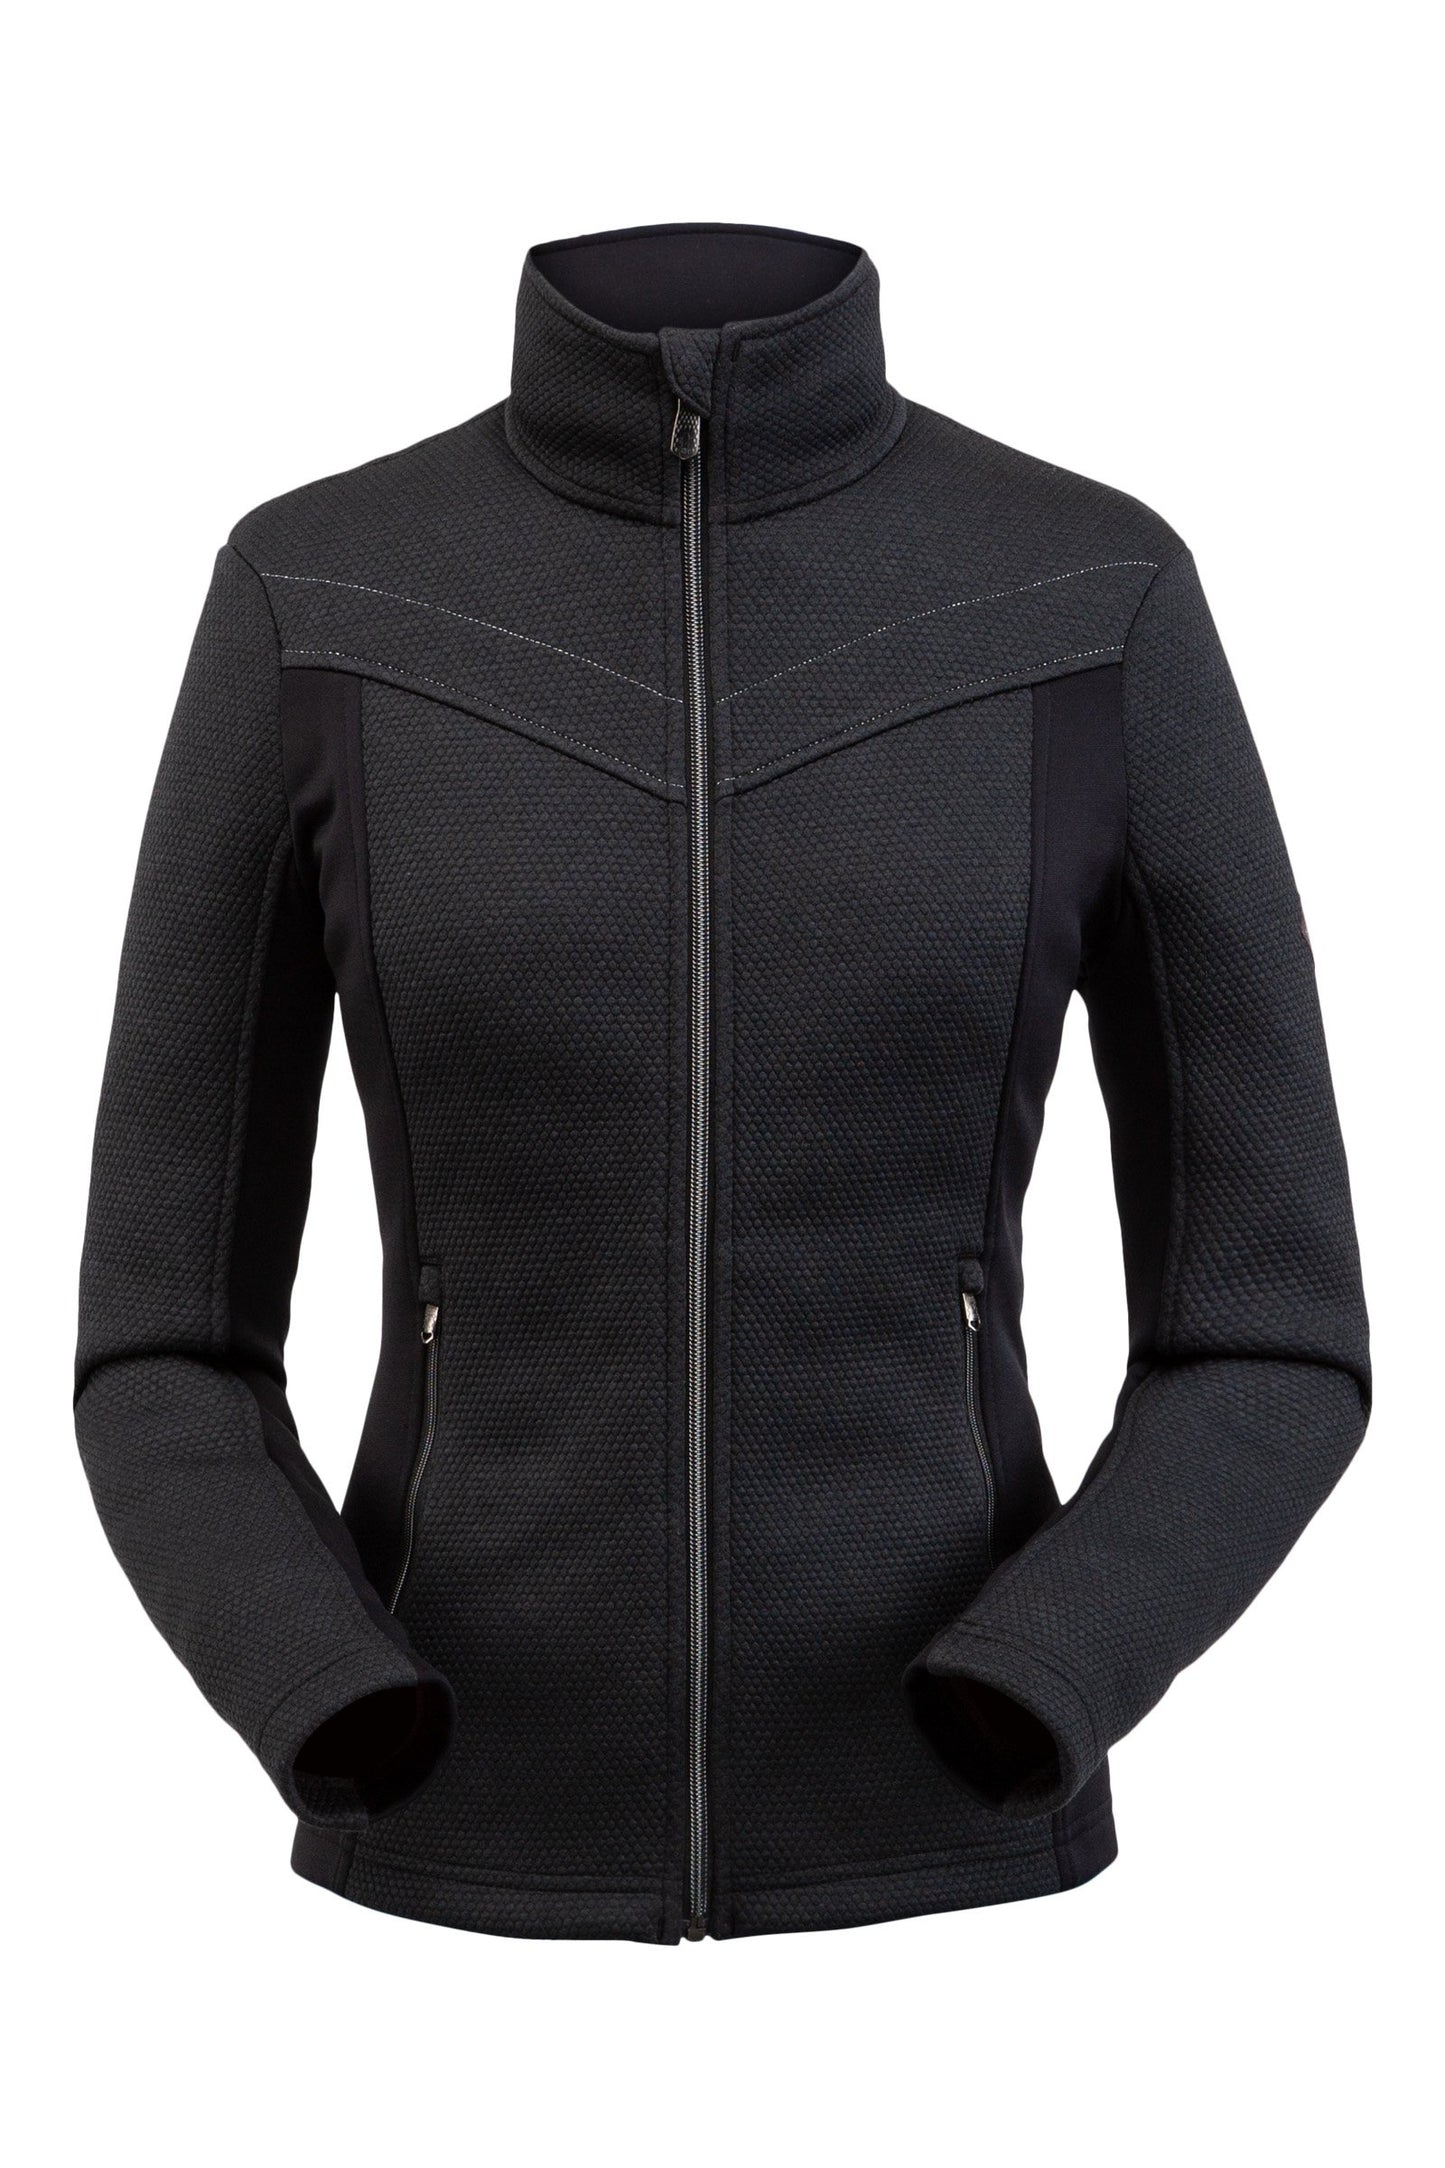 Spyder Encore Full Zip Fleece Jacket (Women's)